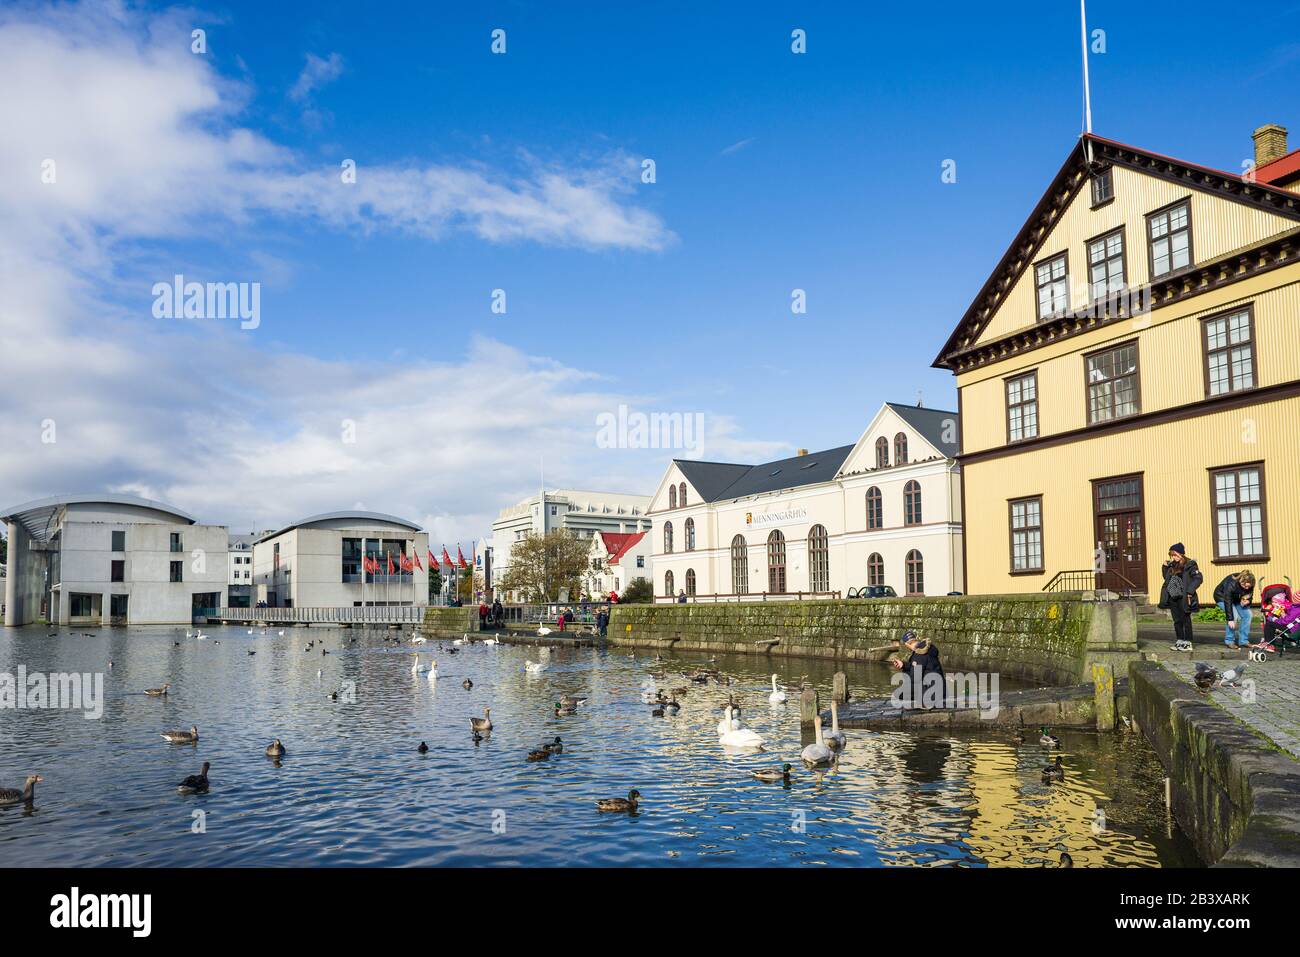 Lac Tjörnin avec bâtiments et hôtel de ville autour de lui tandis que les gens nourrissent des canards sur le lac, Reykjavik, Islande Banque D'Images